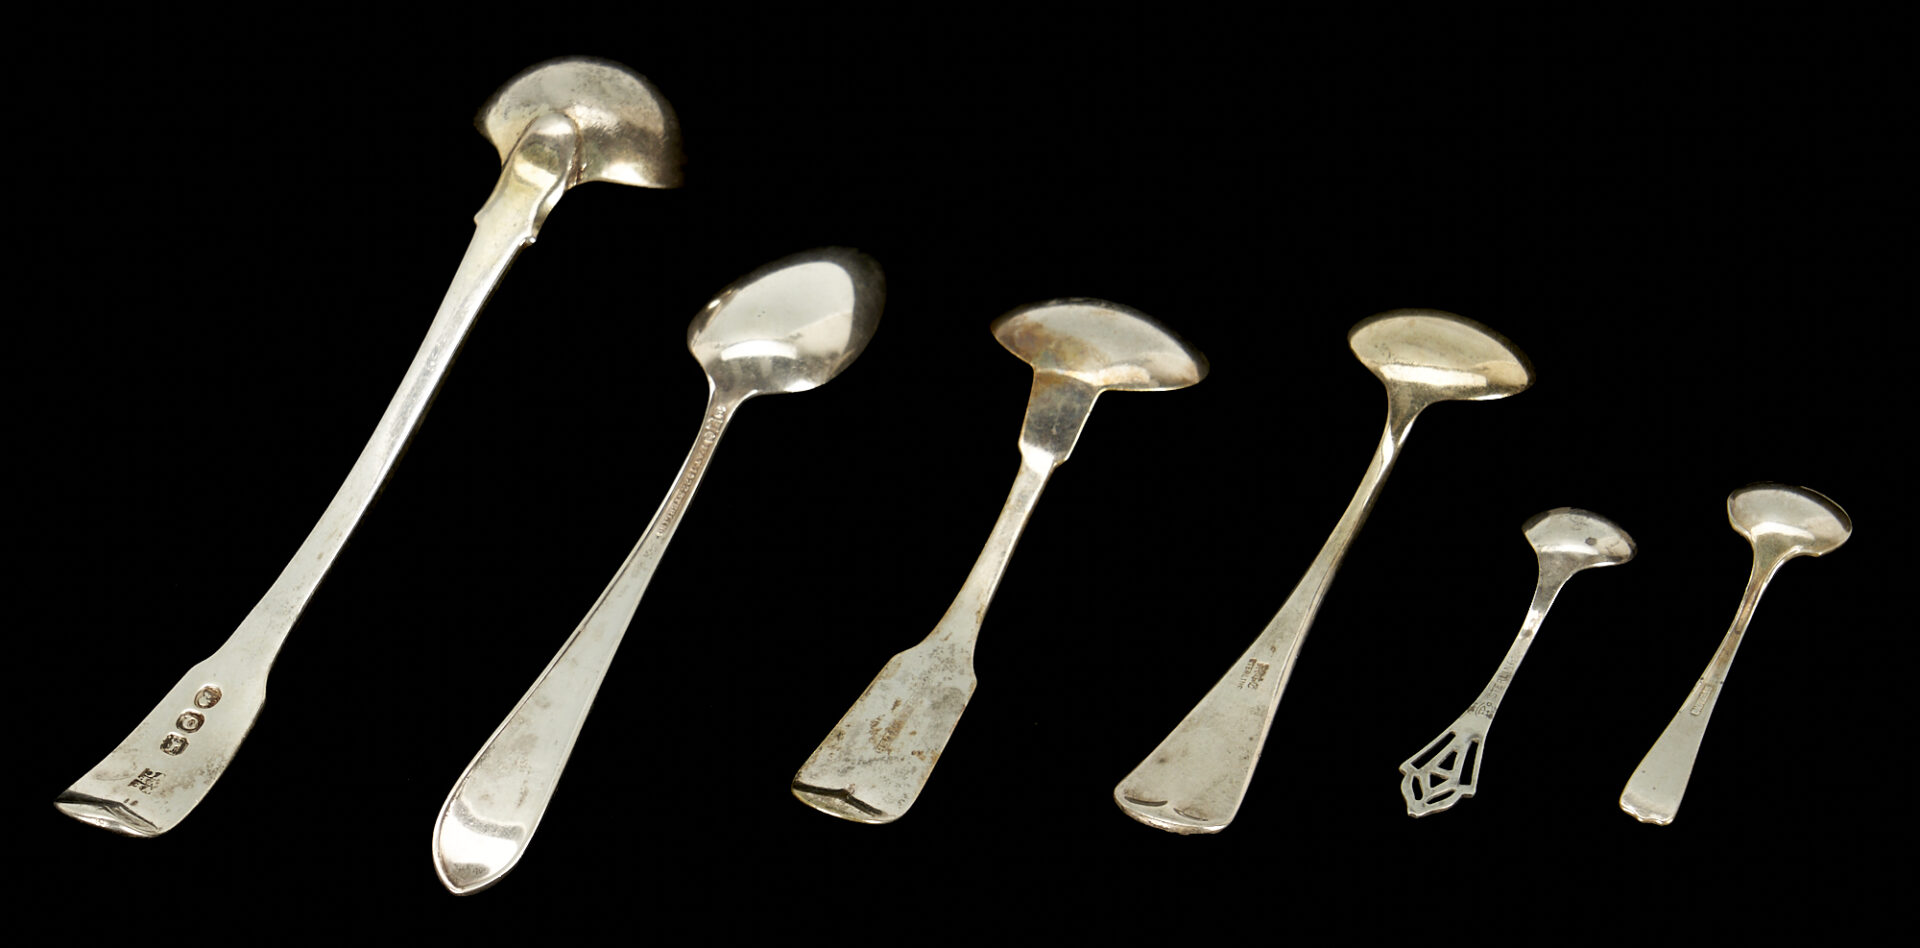 Lot 181: 22 Silver Items: Sterling Ladle, 16 Spoons & 5 Corn Holders/Skewers